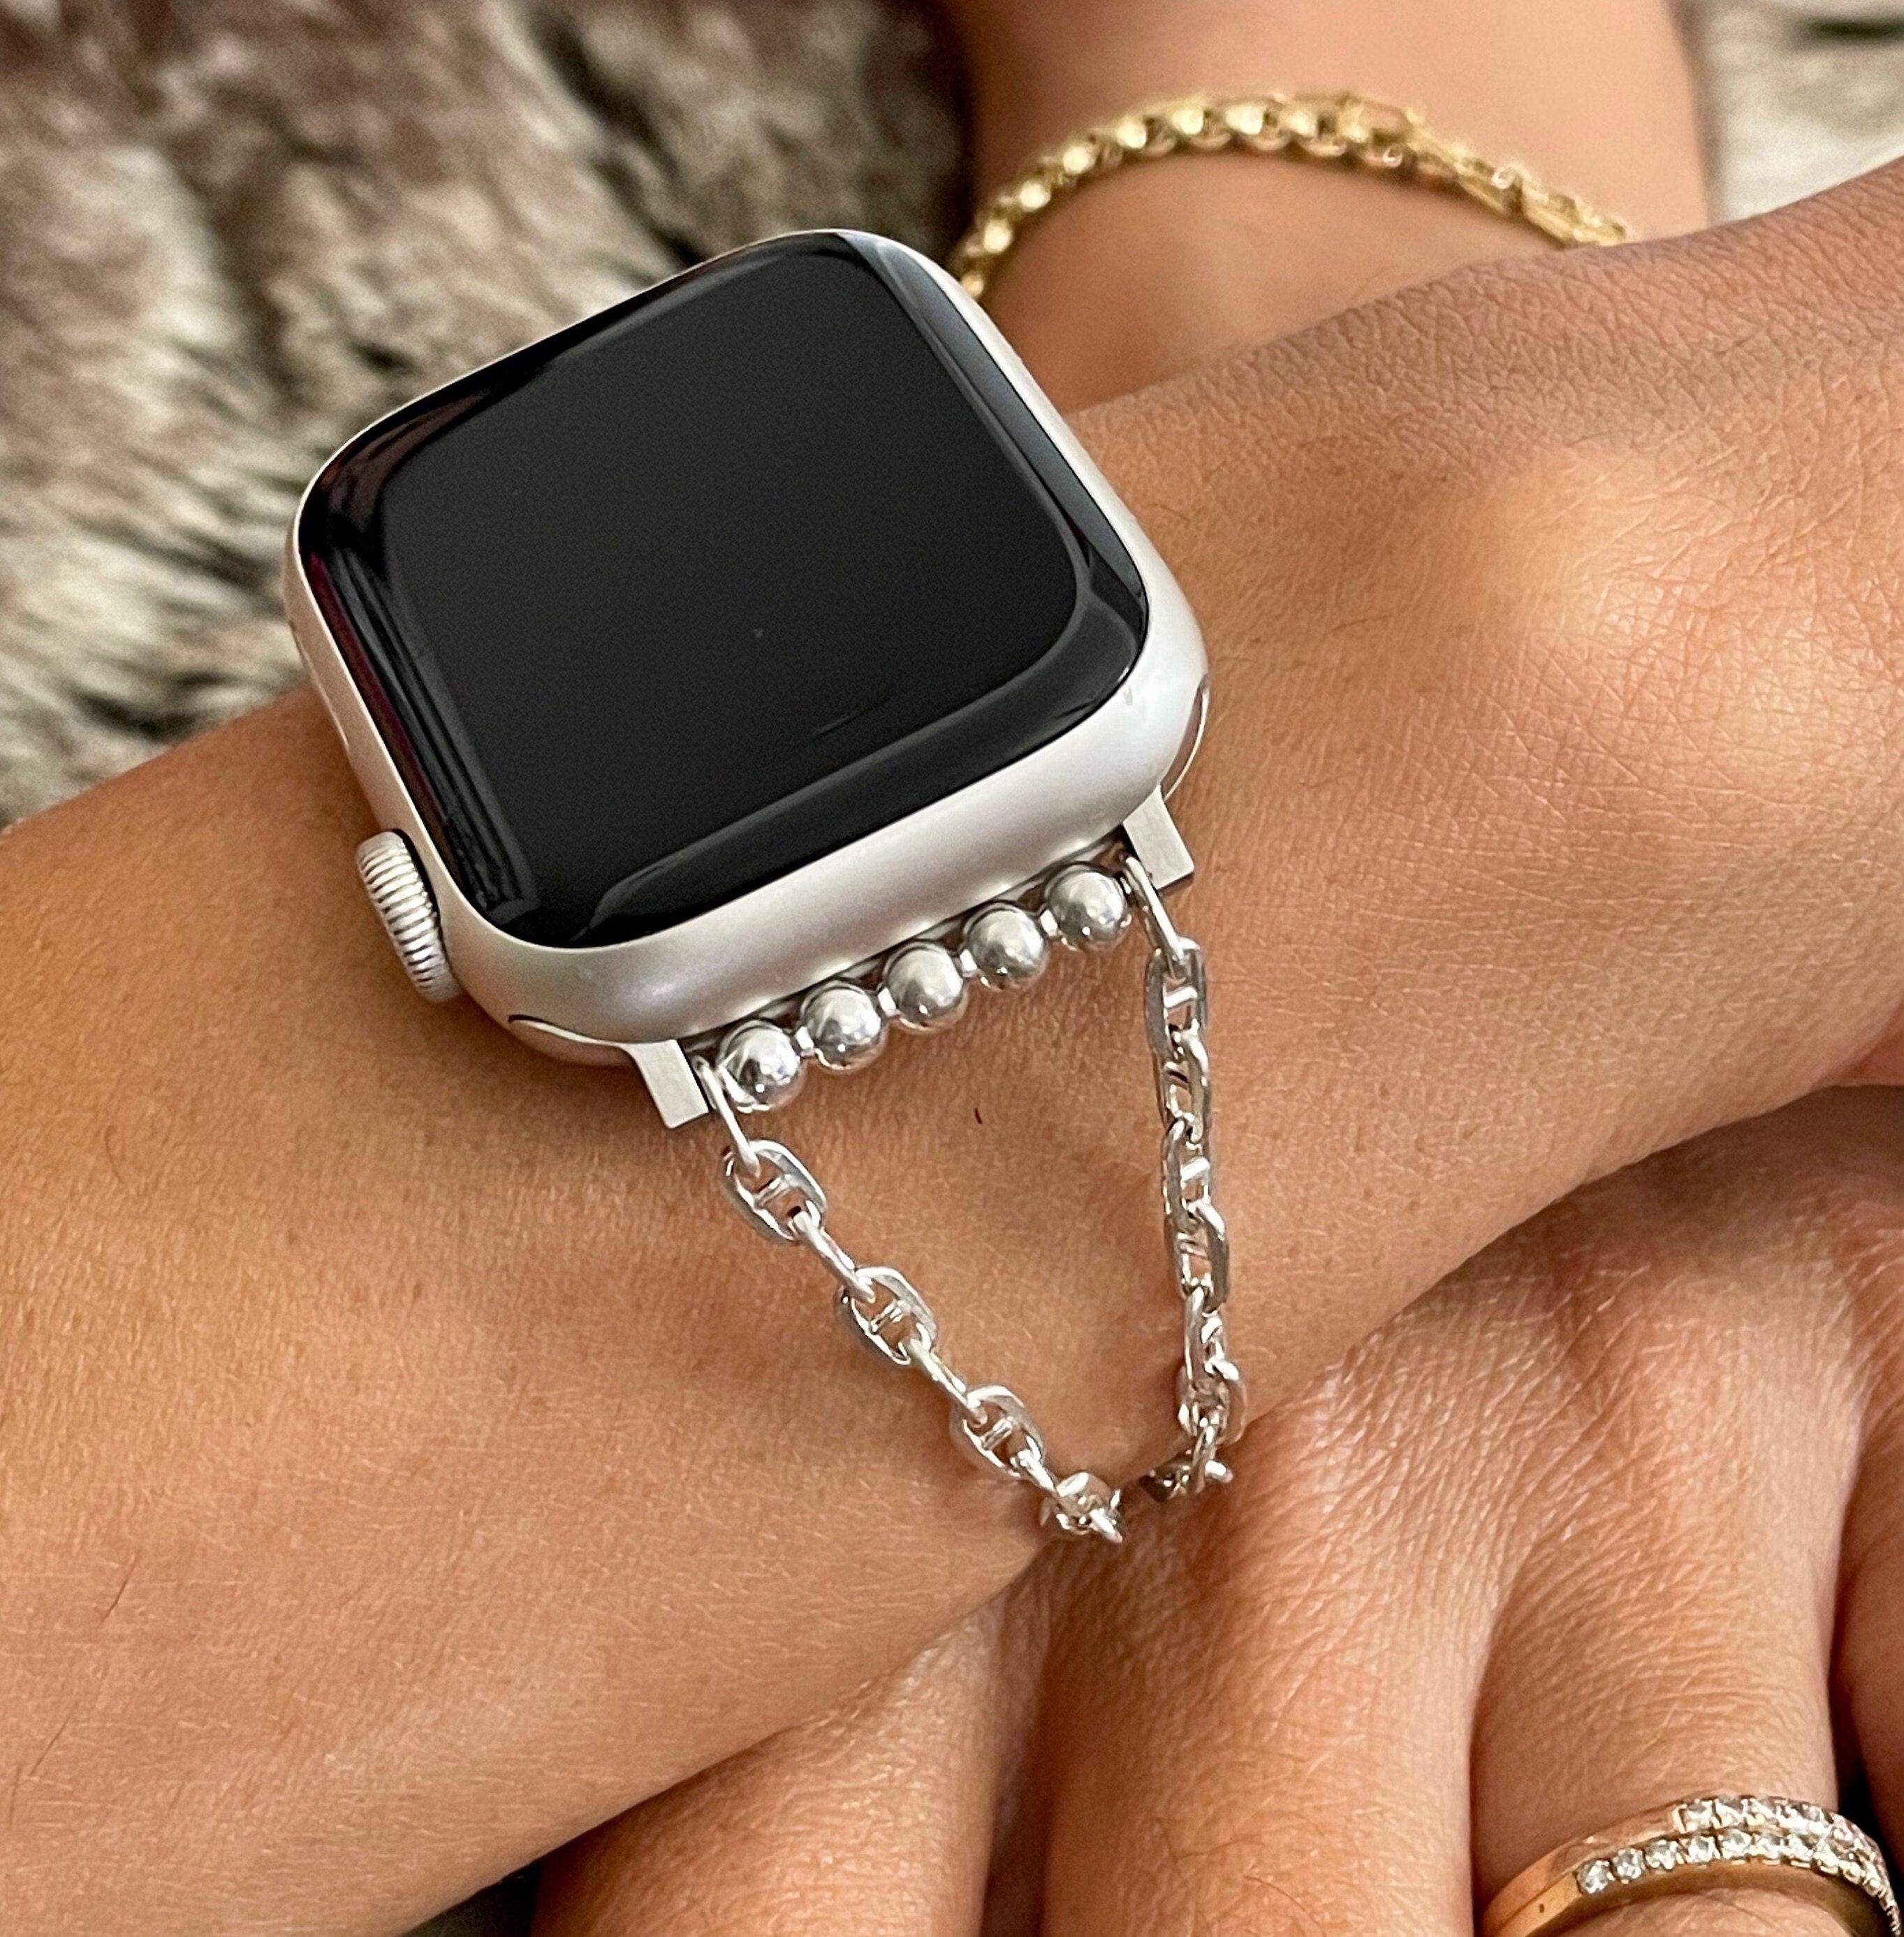 Golden Concept EV44 elegant Apple Watch case has a steel chain bracelet and  color options » Gadget Flow